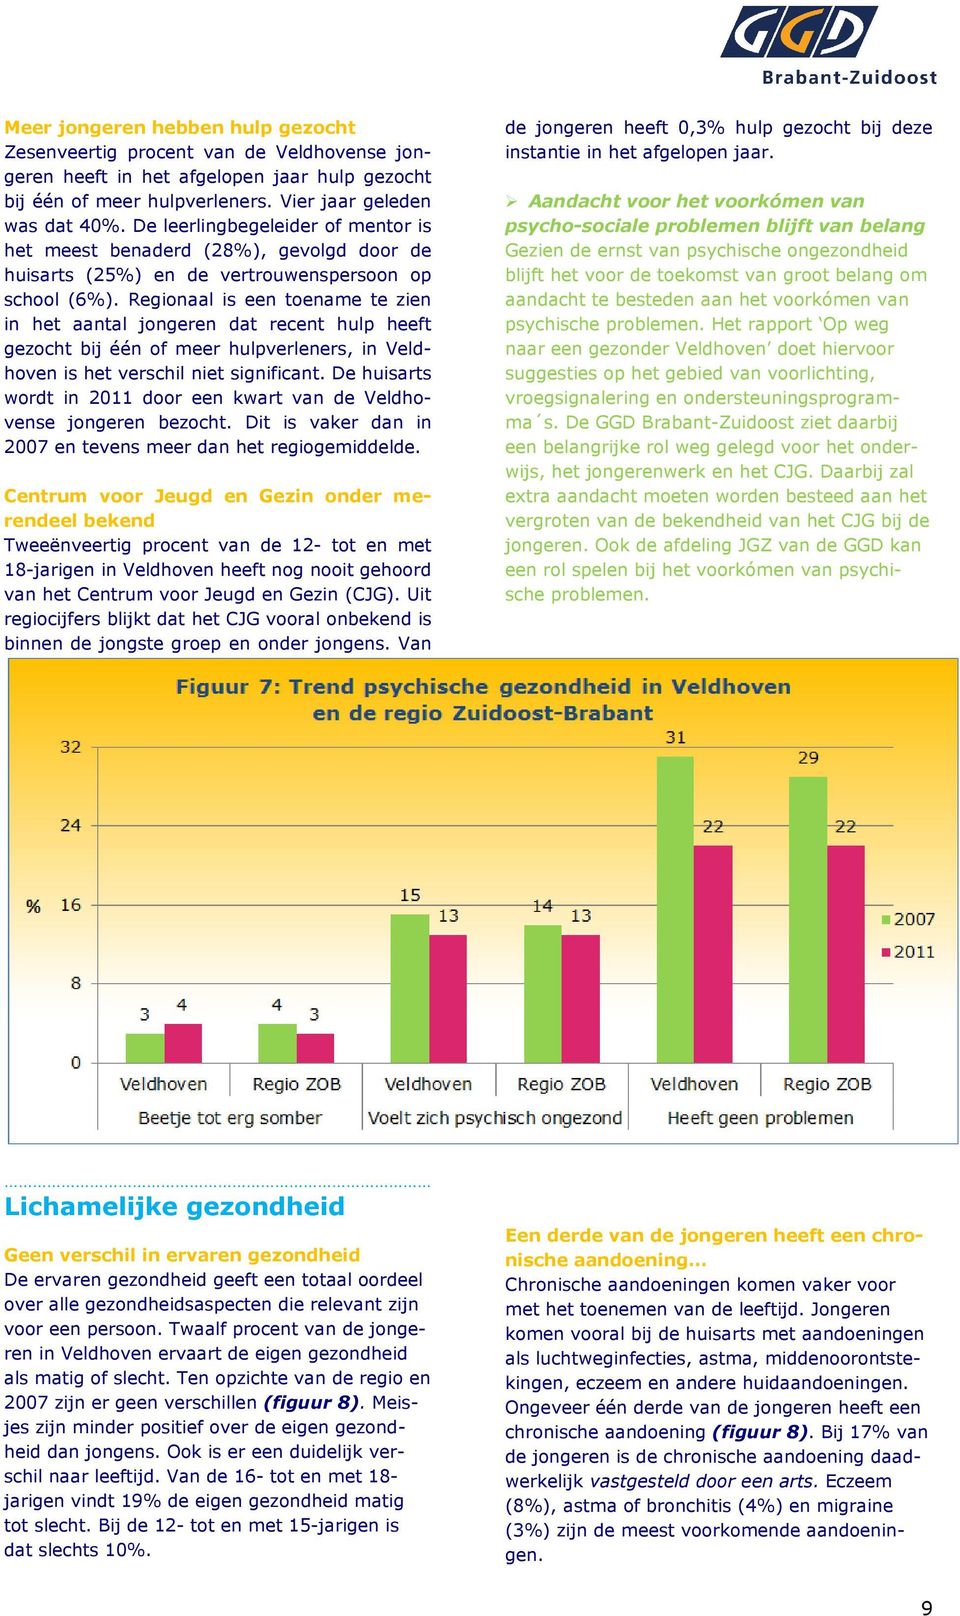 Regionaal is een toename te zien in het aantal jongeren dat recent hulp heeft gezocht bij één of meer hulpverleners, in Veldhoven is het verschil niet significant.